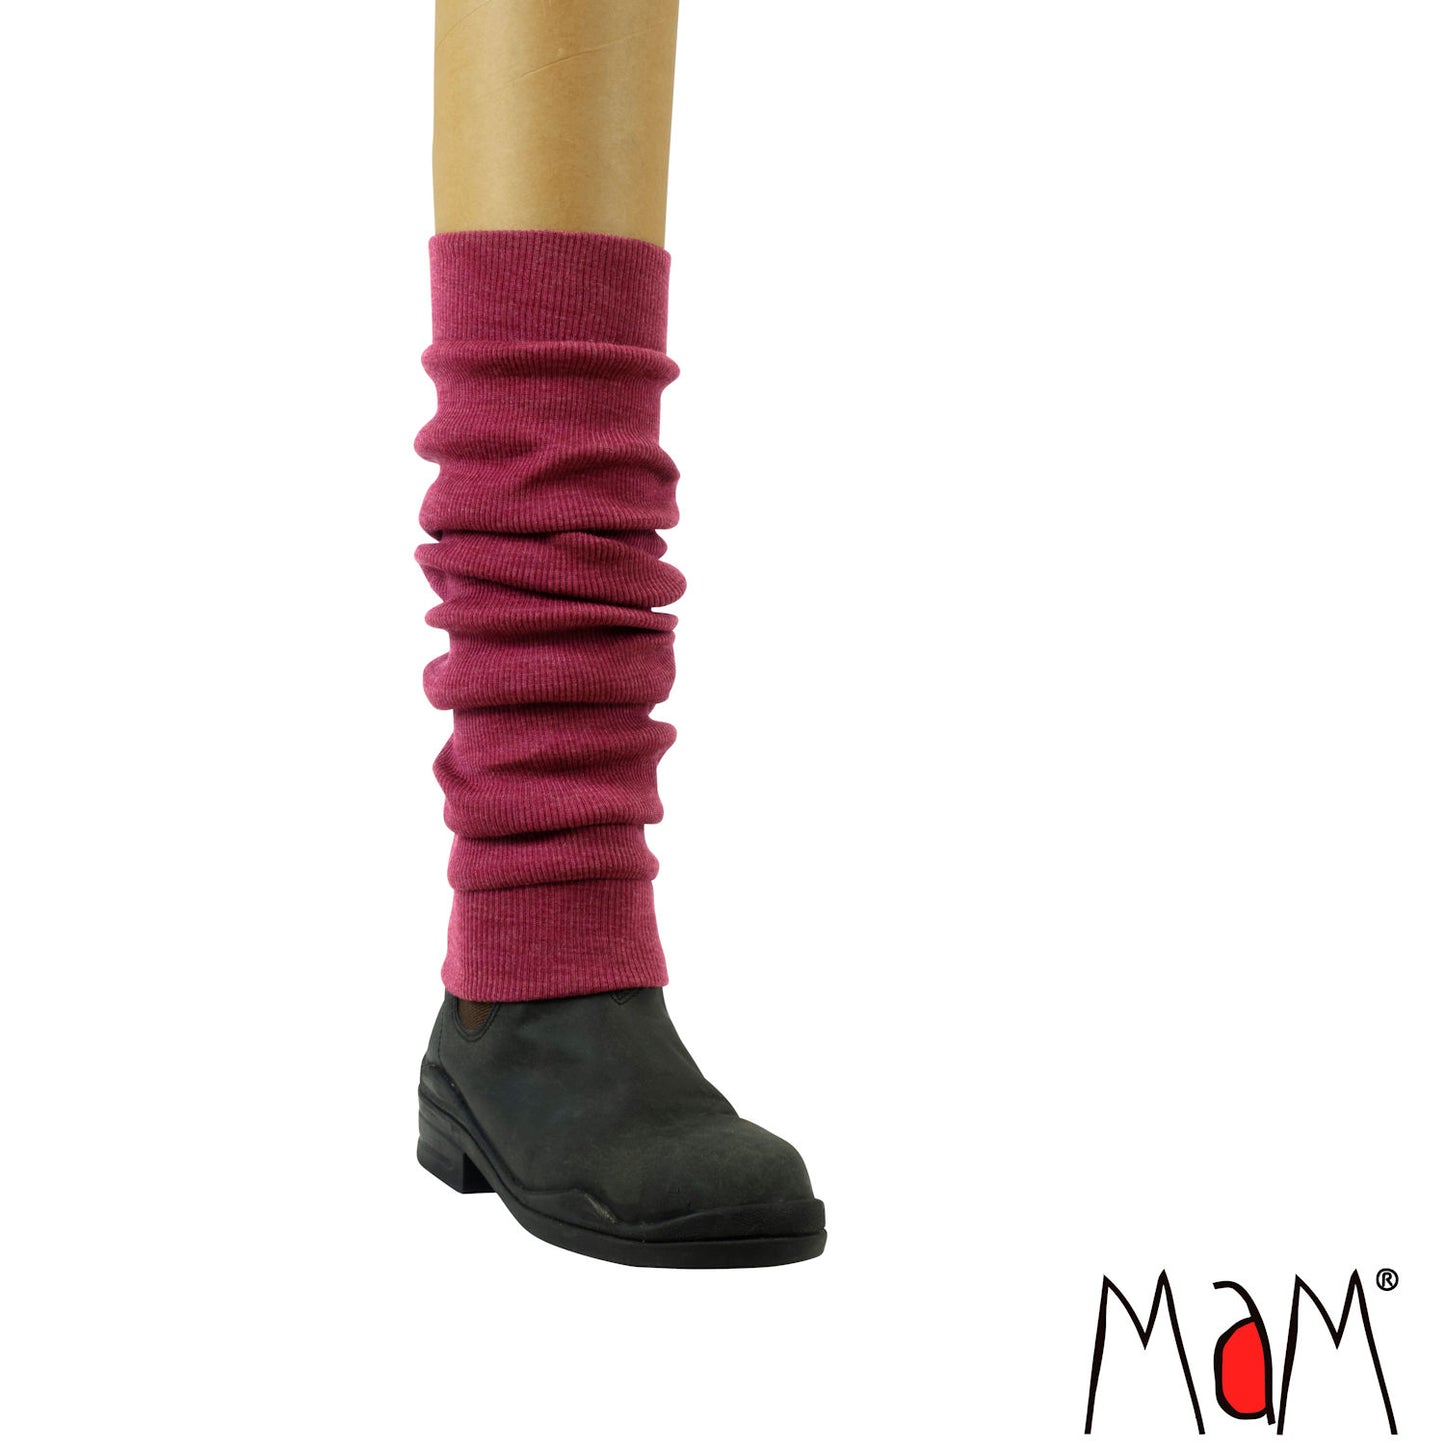 MaM Natural Woollies Leg Warmers